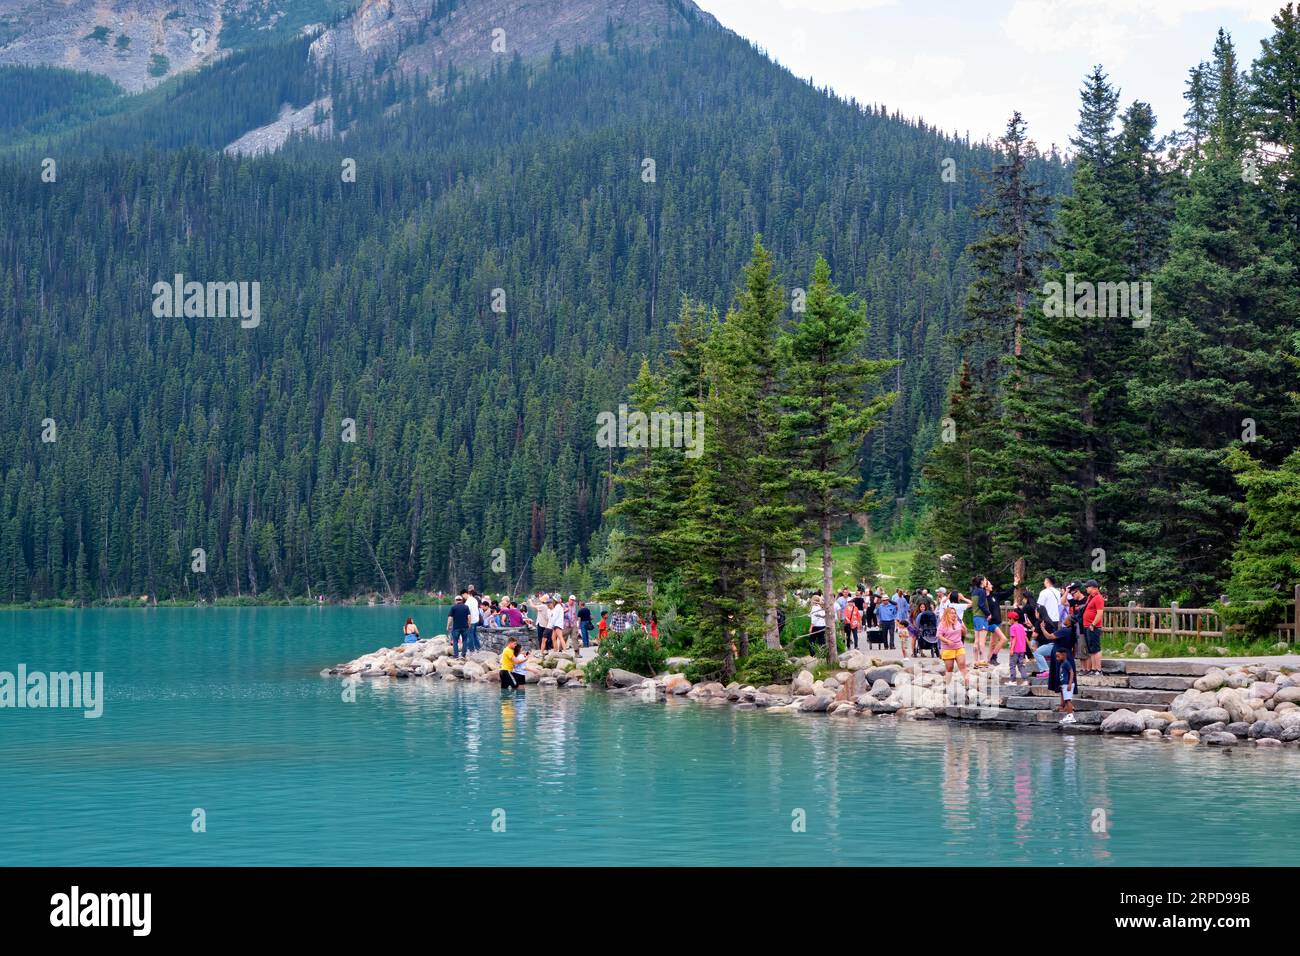 Tourists enjoying the sights at beautiful Lake Louise Alberta. Stock Photo